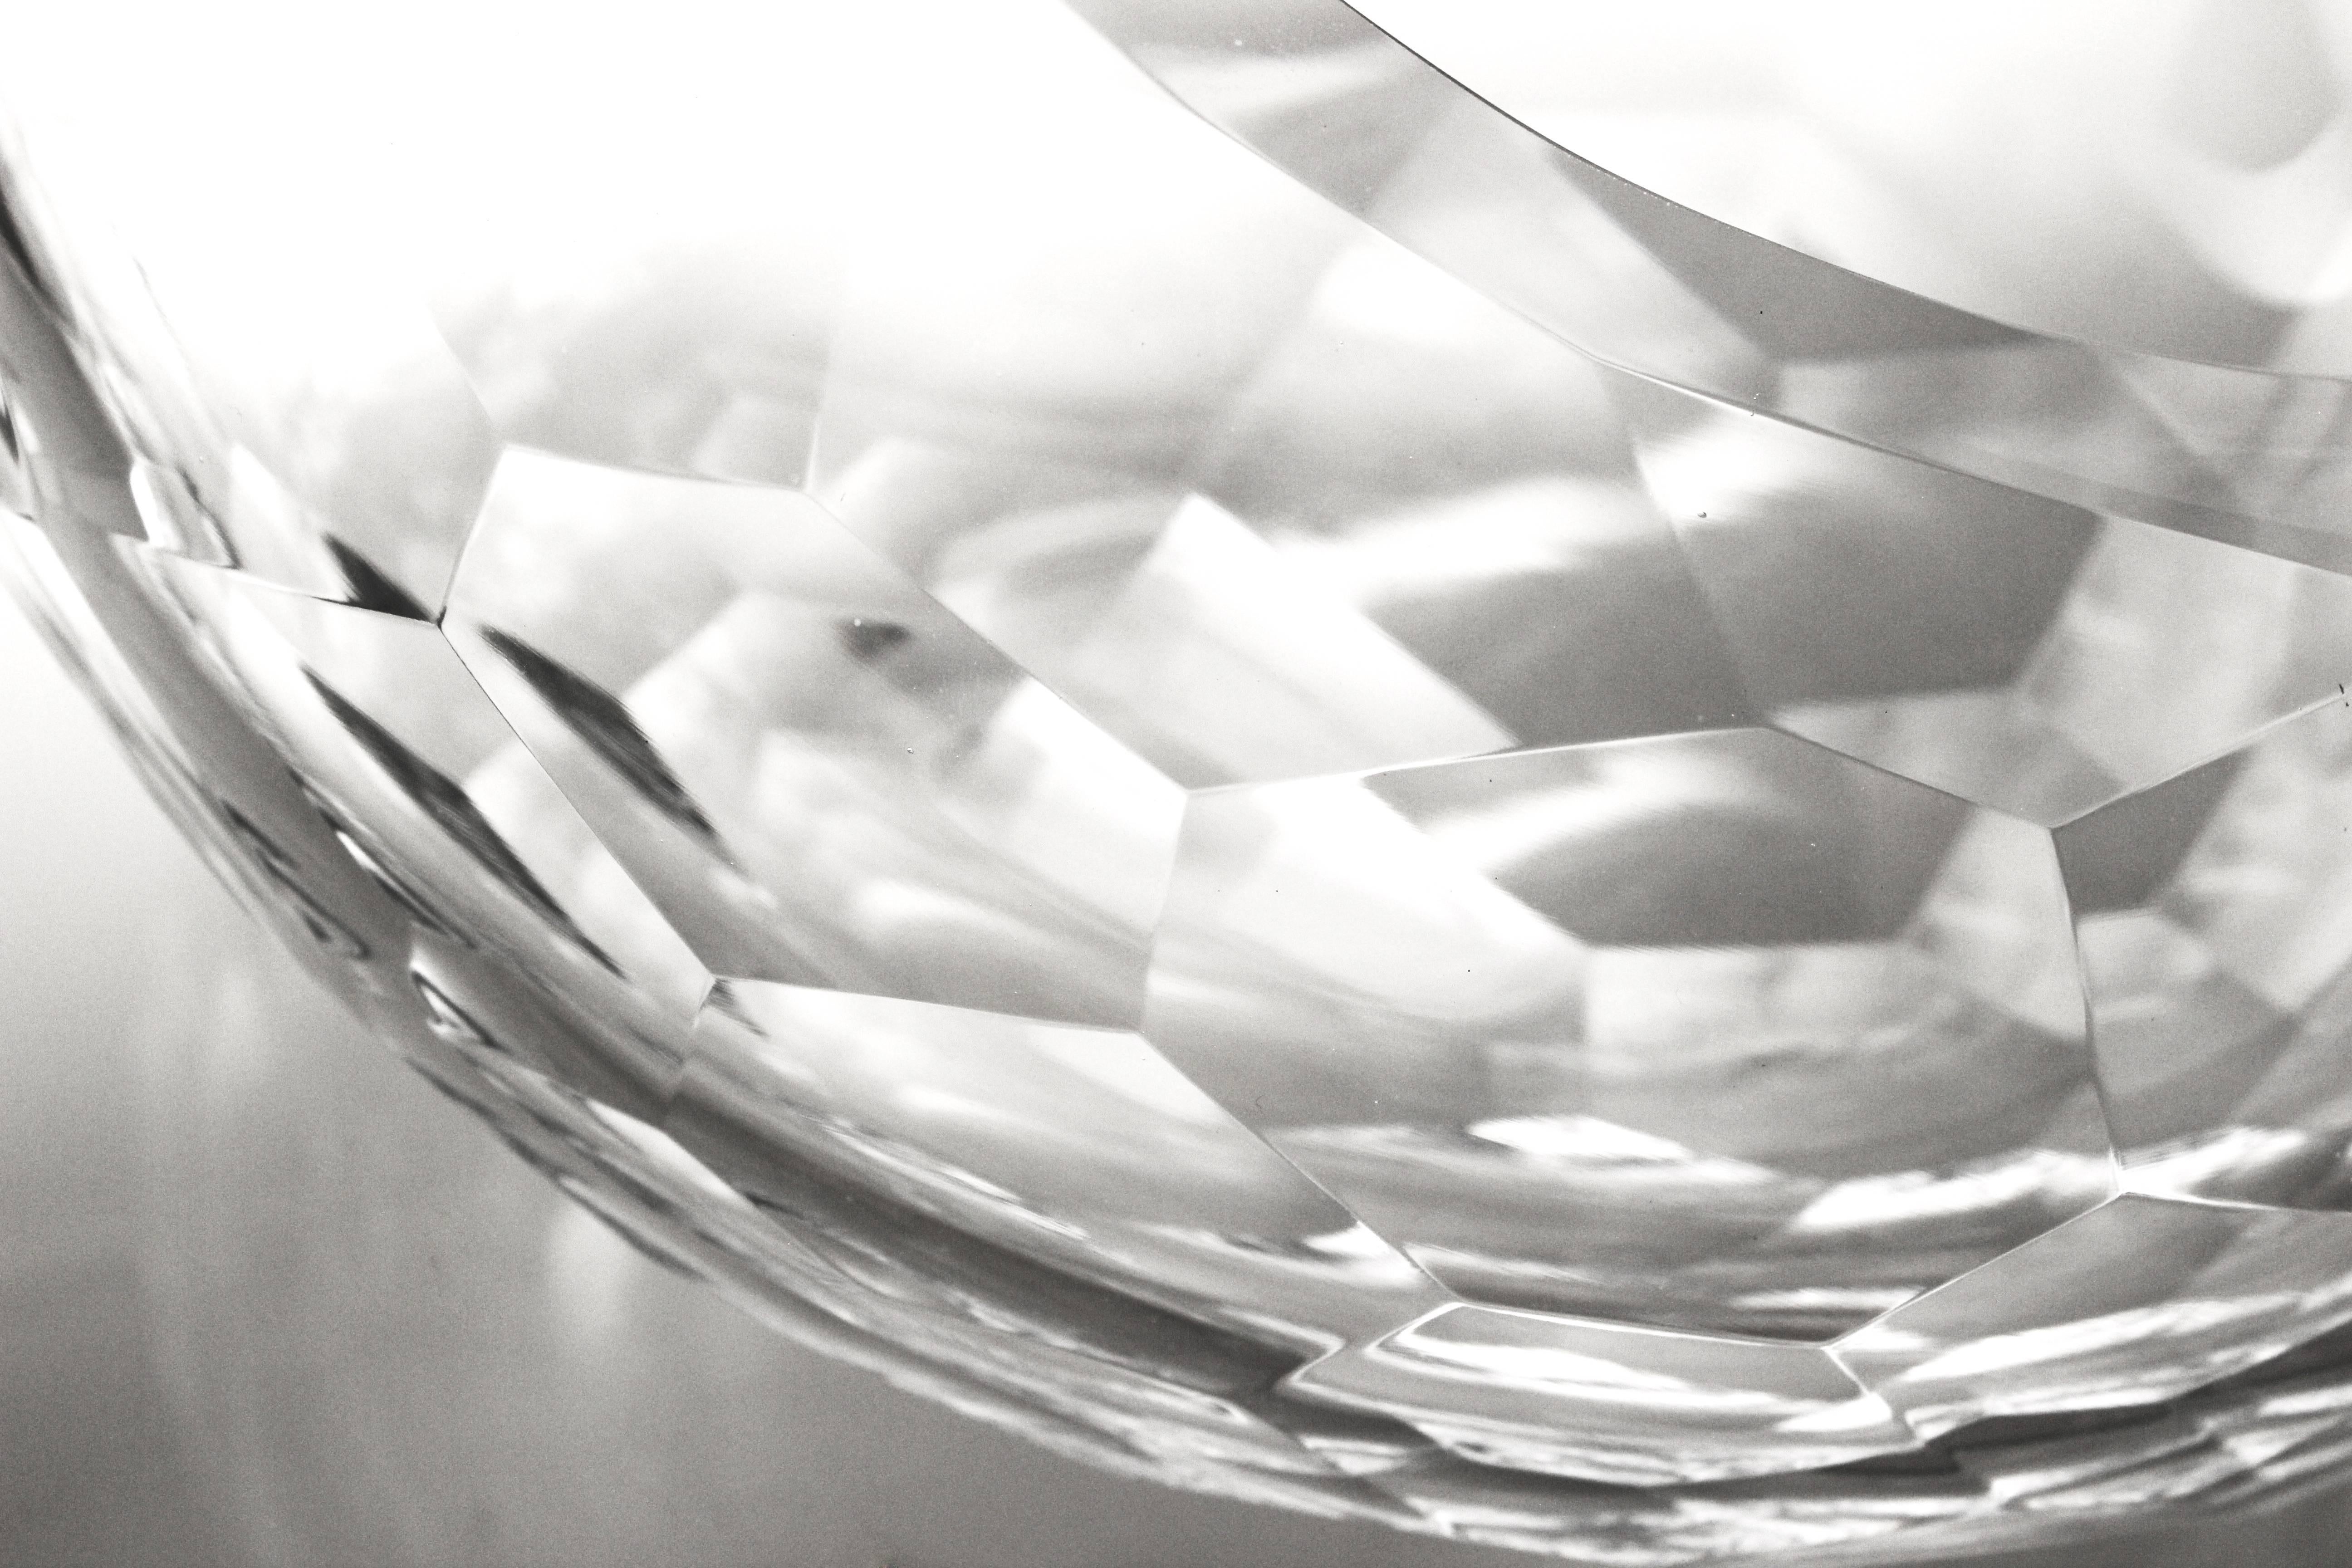 Diese Glasschale wurde in einem zeitgenössischen mexikanischen Design von Nouvelstudio hergestellt, einer künstlerischen Werkstatt, die sich dem Experimentieren und der Entwicklung von Glas verschrieben hat. Nach Fachleuten, die in der Lage sind,